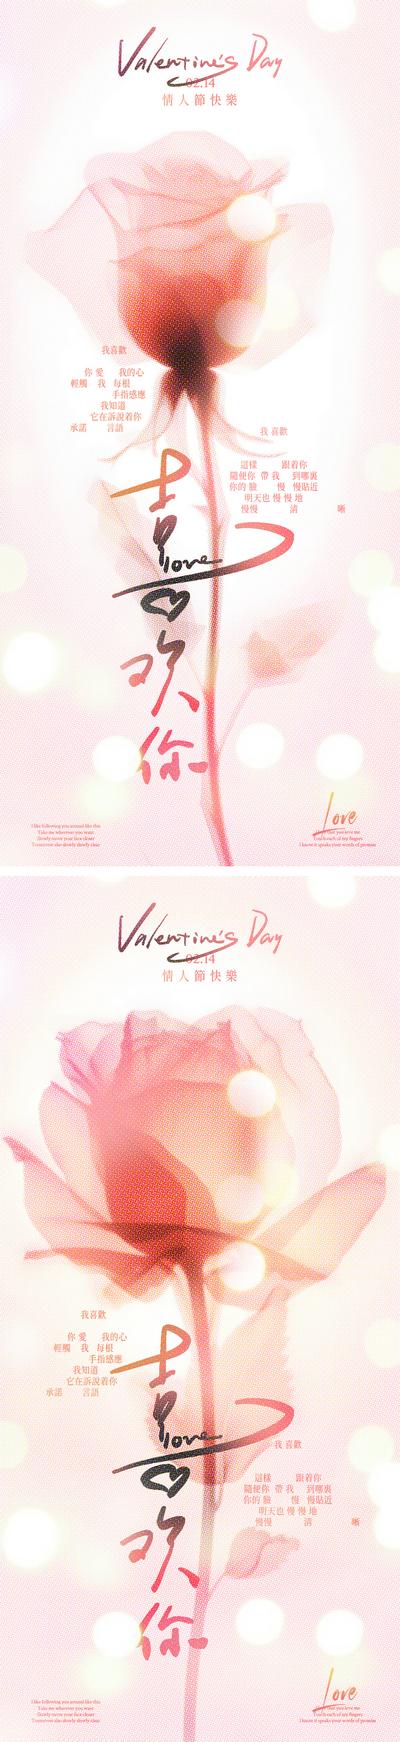 【南门网】广告 海报 公历节日 情人节 214 玫瑰 光斑 浪漫 光影 简约 手写字 爱情 花朵 喜欢你